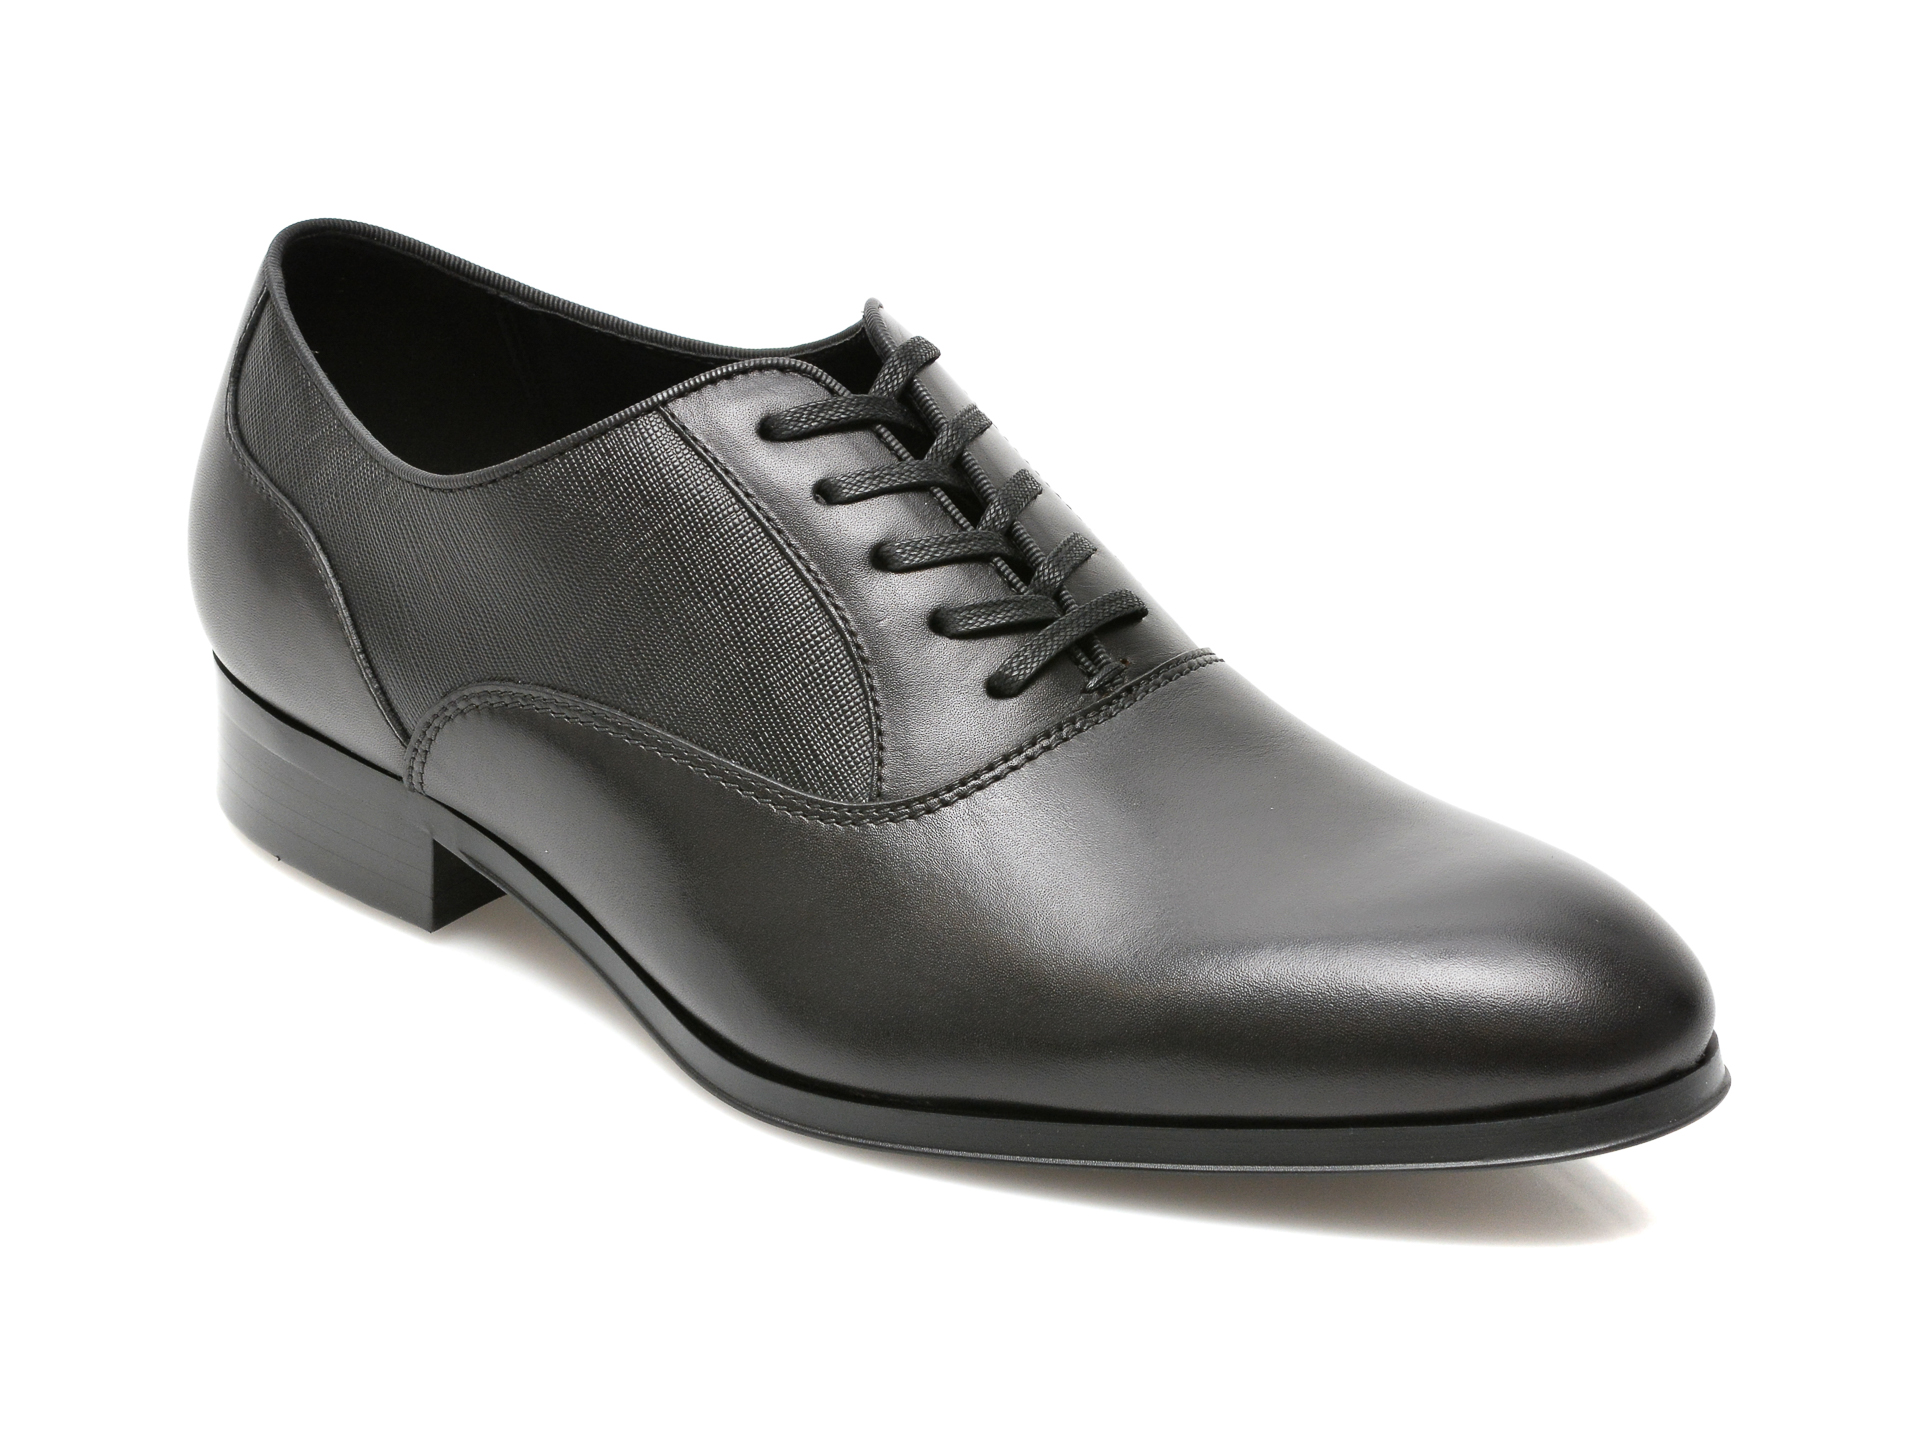 Pantofi ALDO negri, RIDGE009, din piele naturala Aldo